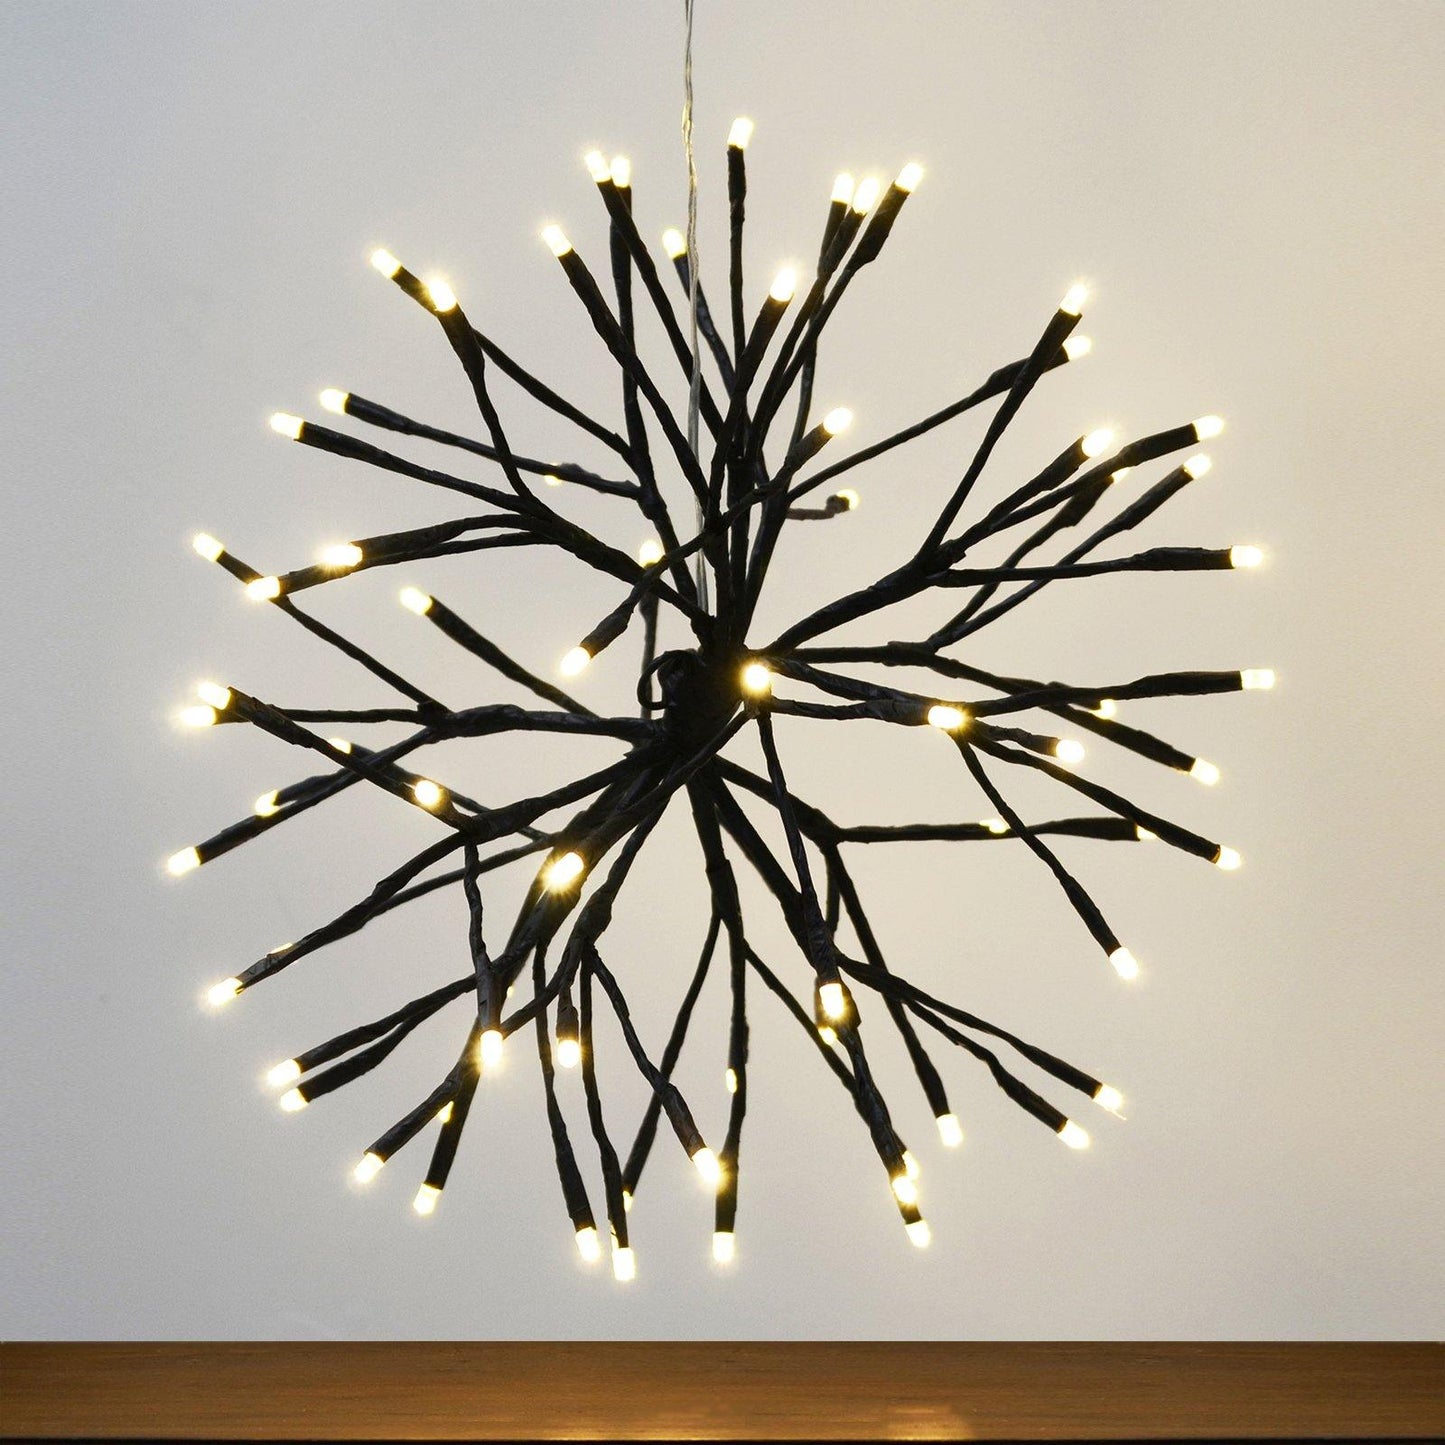 Mr Crimbo 14" Light Up Twig Ball Hanging Christmas Decoration - MrCrimbo.co.uk -XS5039 - Black -christmas decor